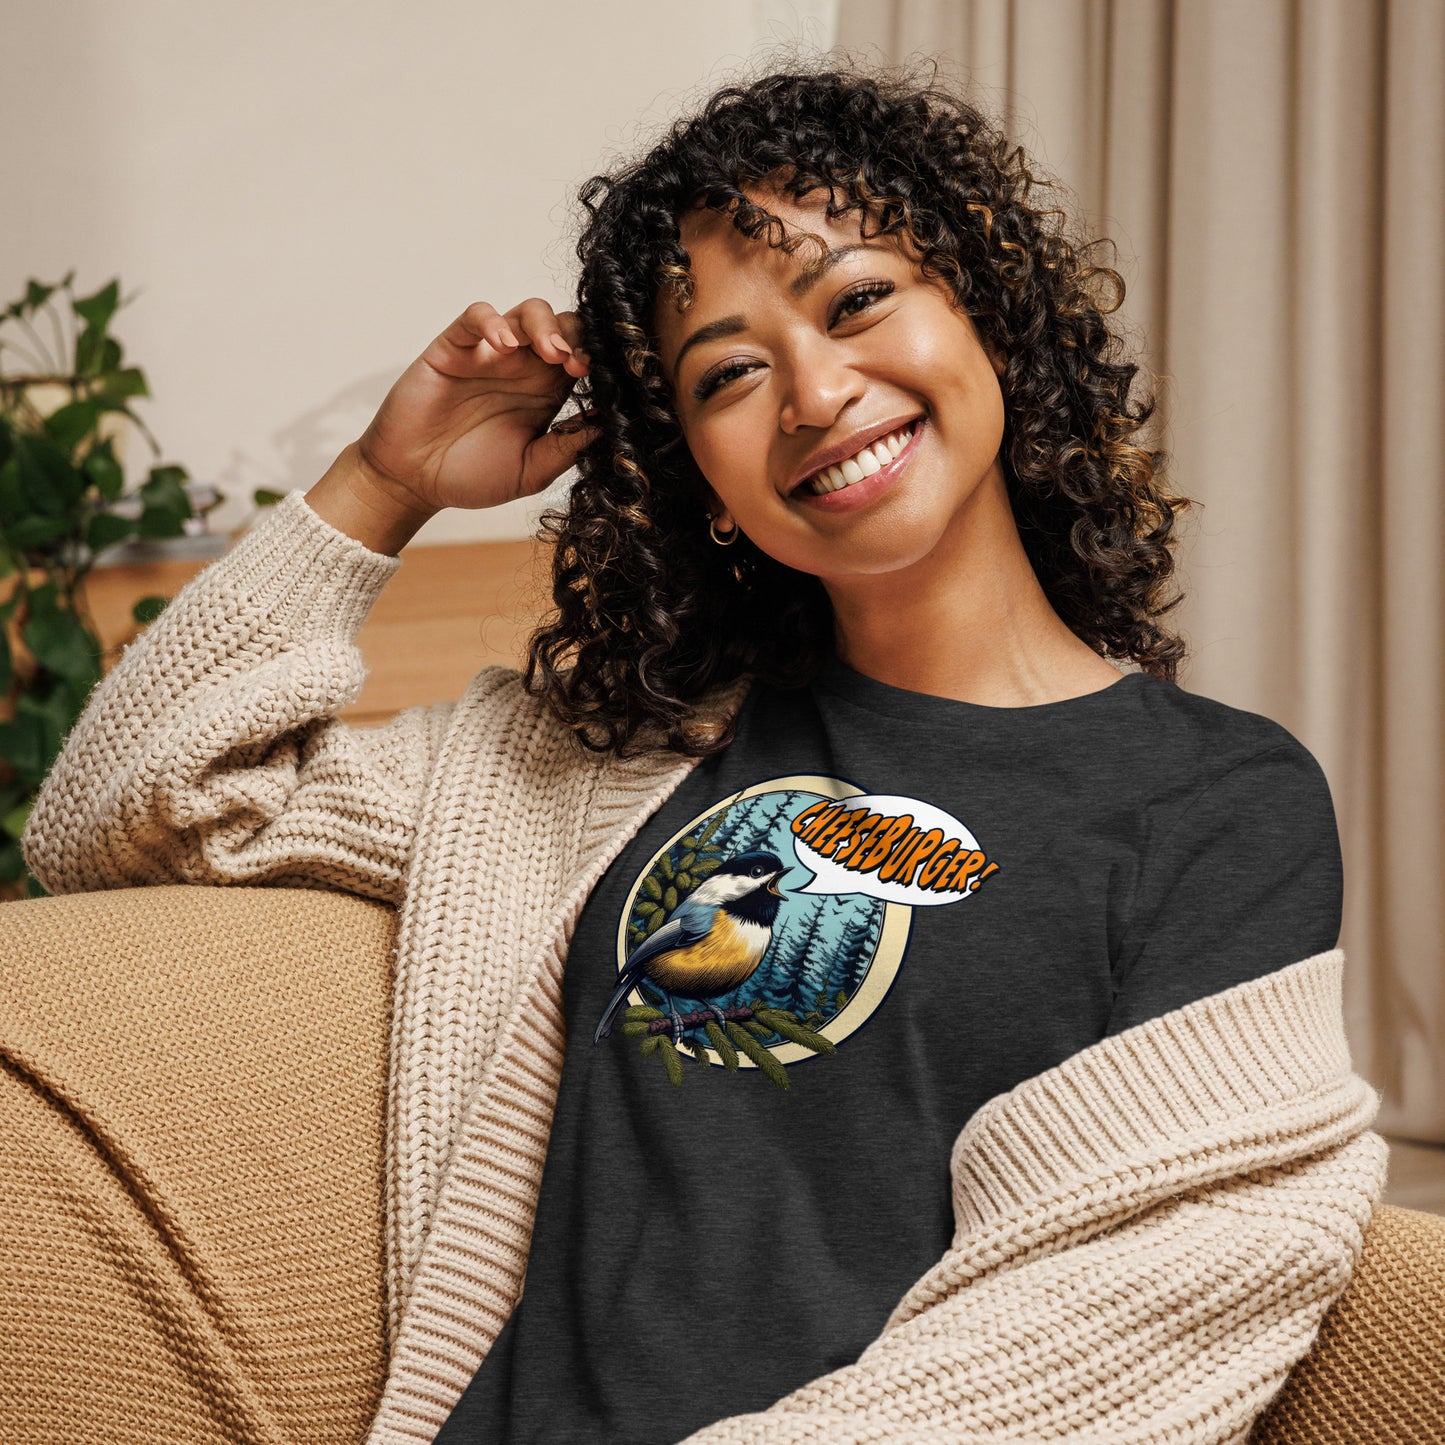 Chickadee Women's Relaxed T-Shirt